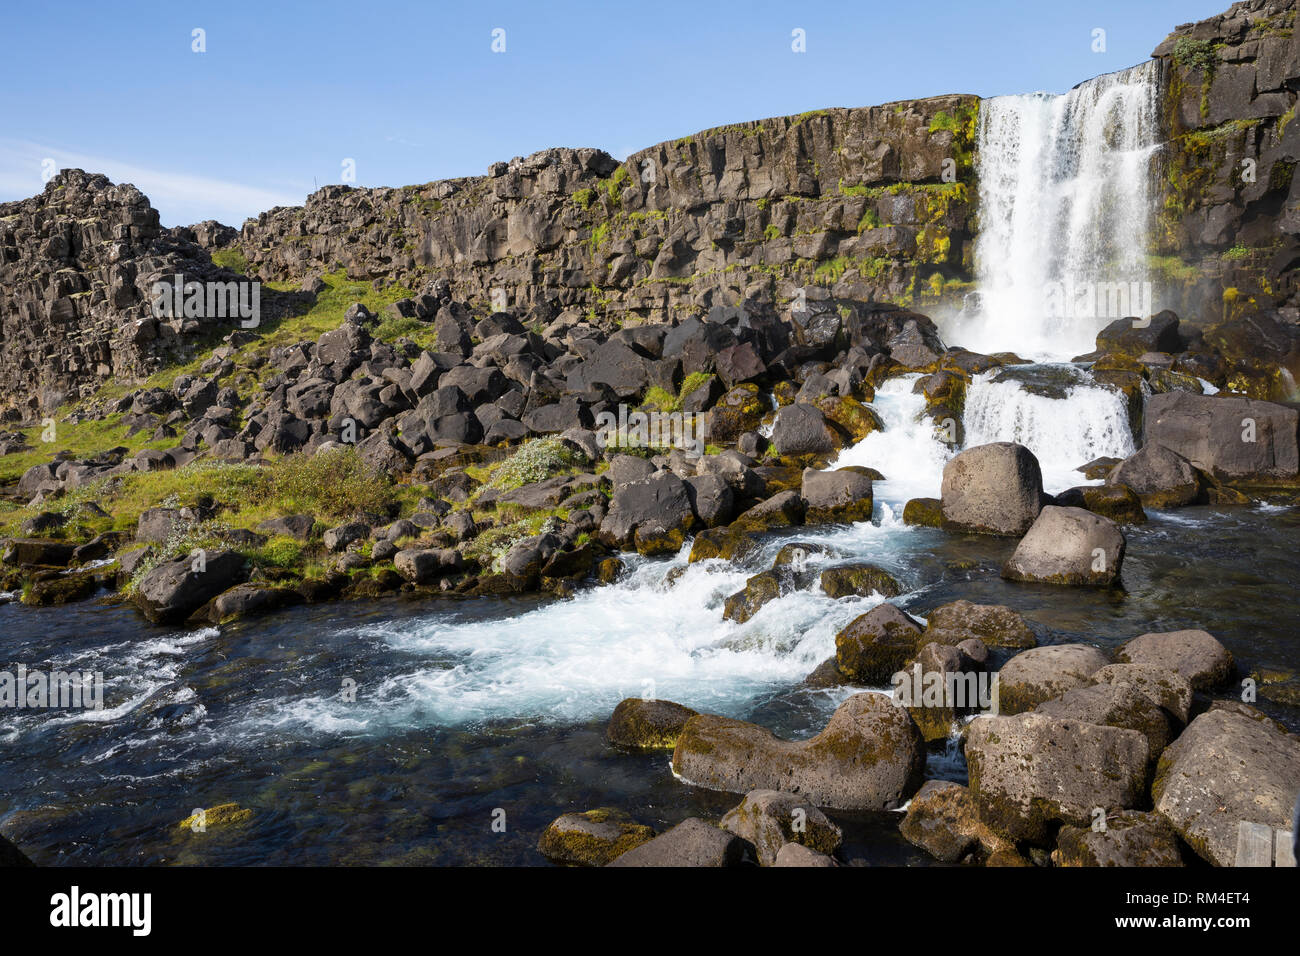 Öxarárfoss, Öxararfoss, Wasserfall im Westen von Island, er speist sich aus dem Wasser der Öxará, Öxara. Þingvellir, Pingvellir, Þingvellir, Þingvell Banque D'Images